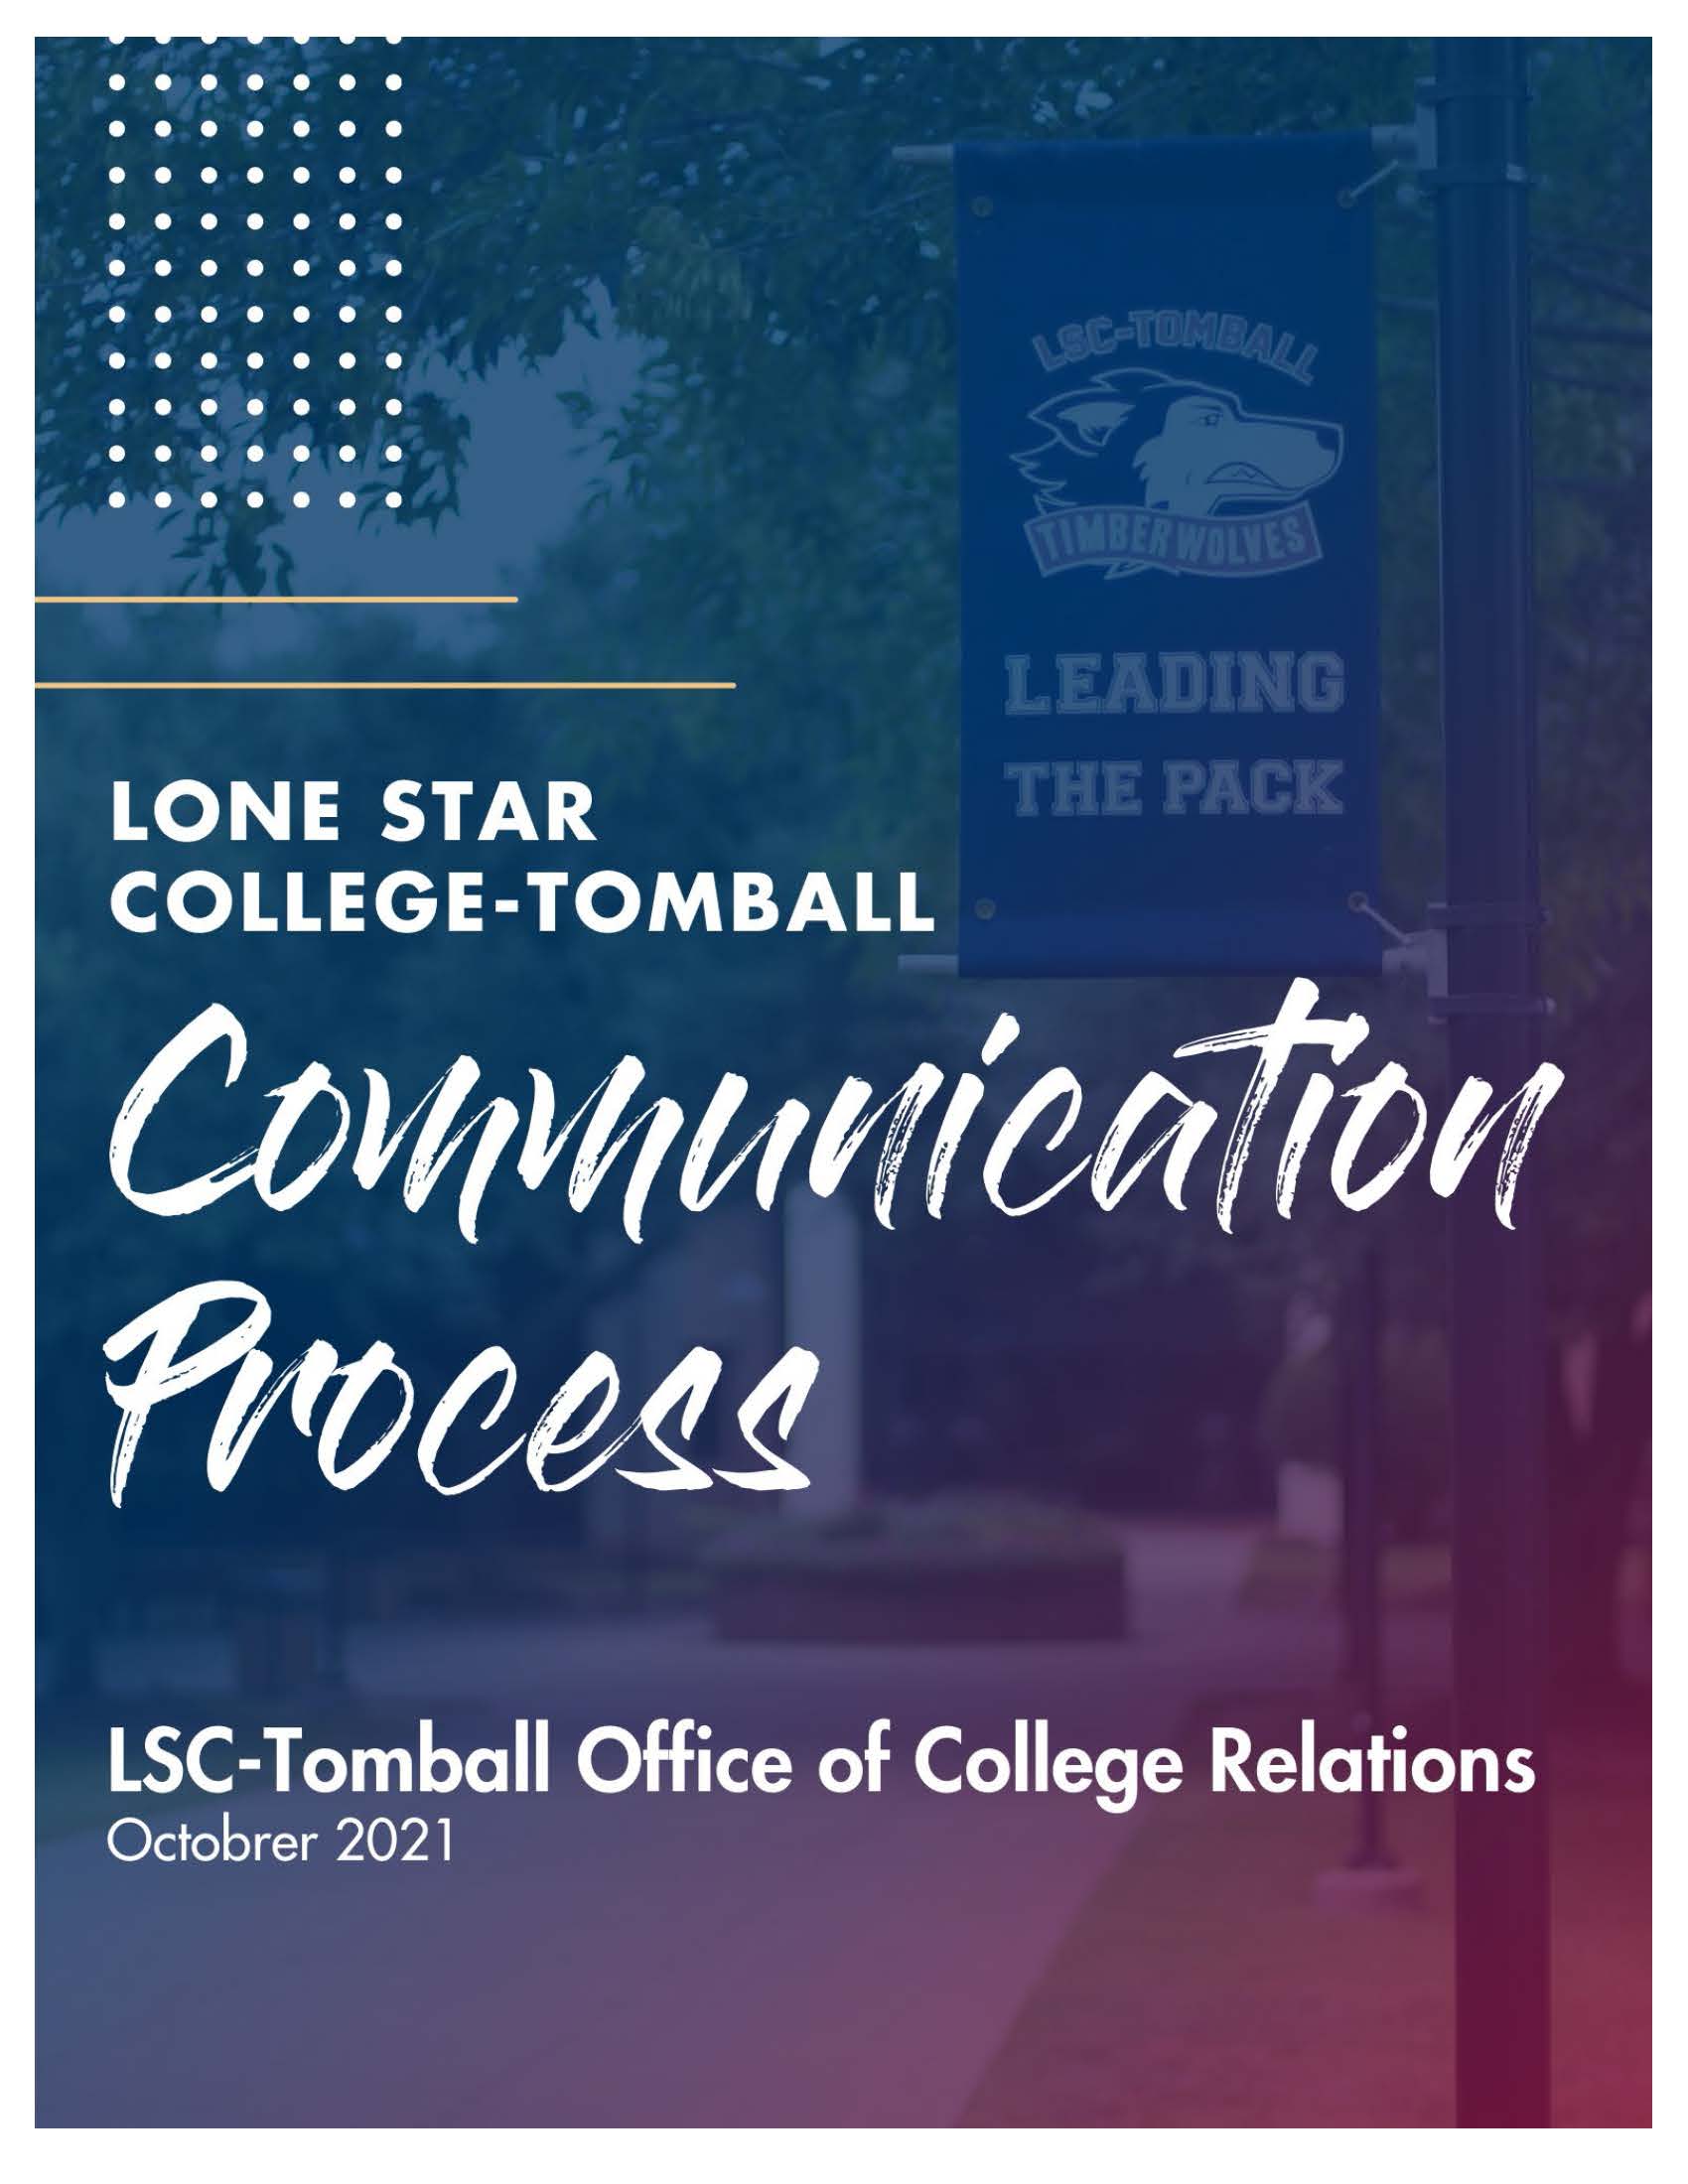 Communication Process 